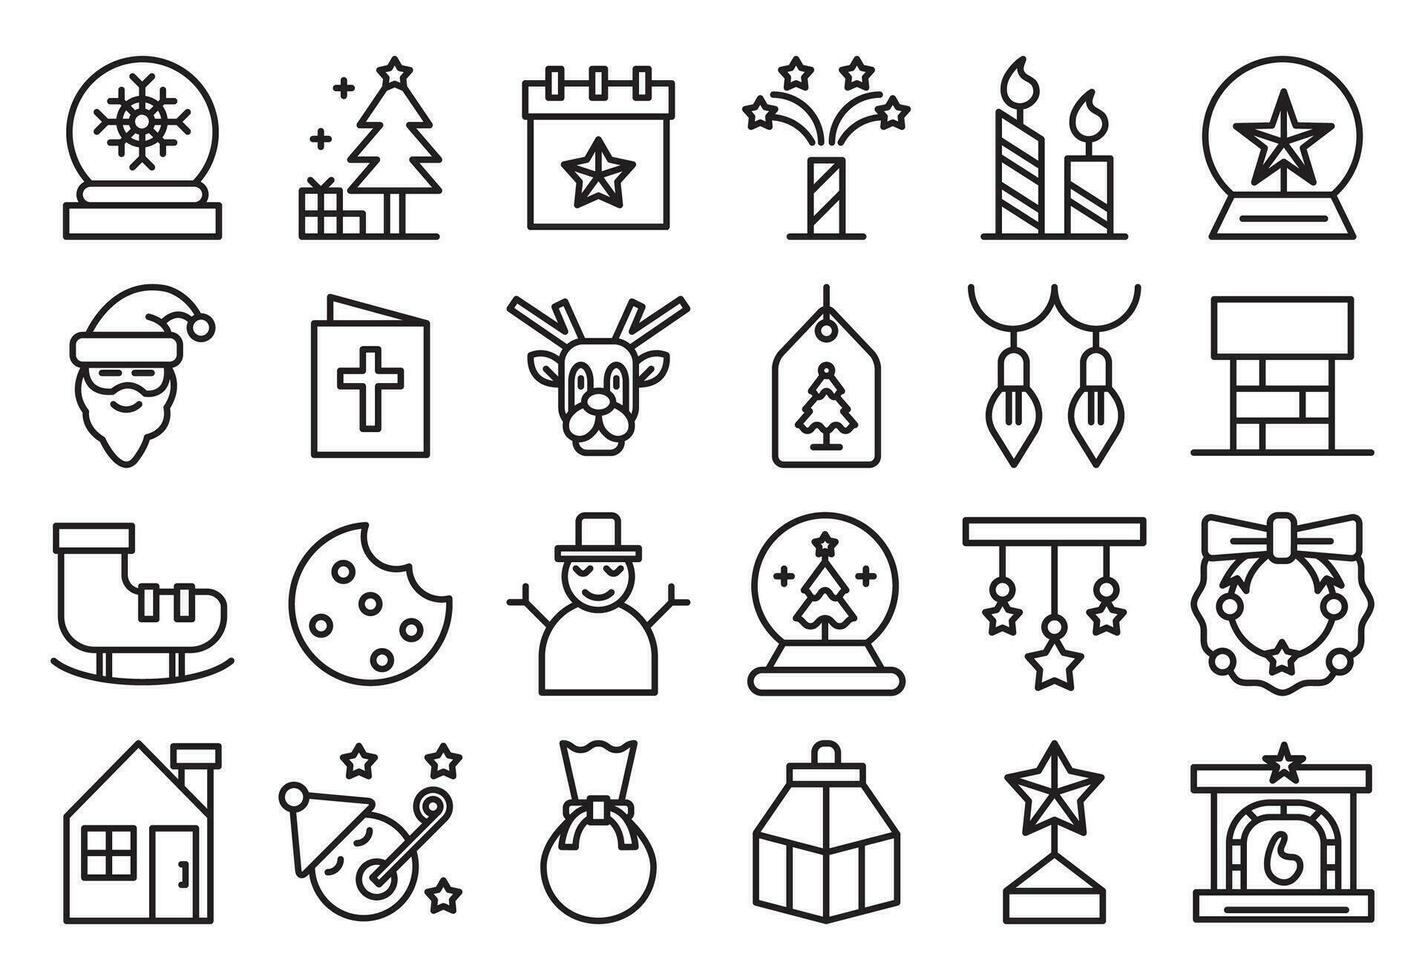 kerstmis, schets pictogrammen set. de verzameling omvat voor mobiel app web, of plaats ontwerp. Kerstmis vector illustraties